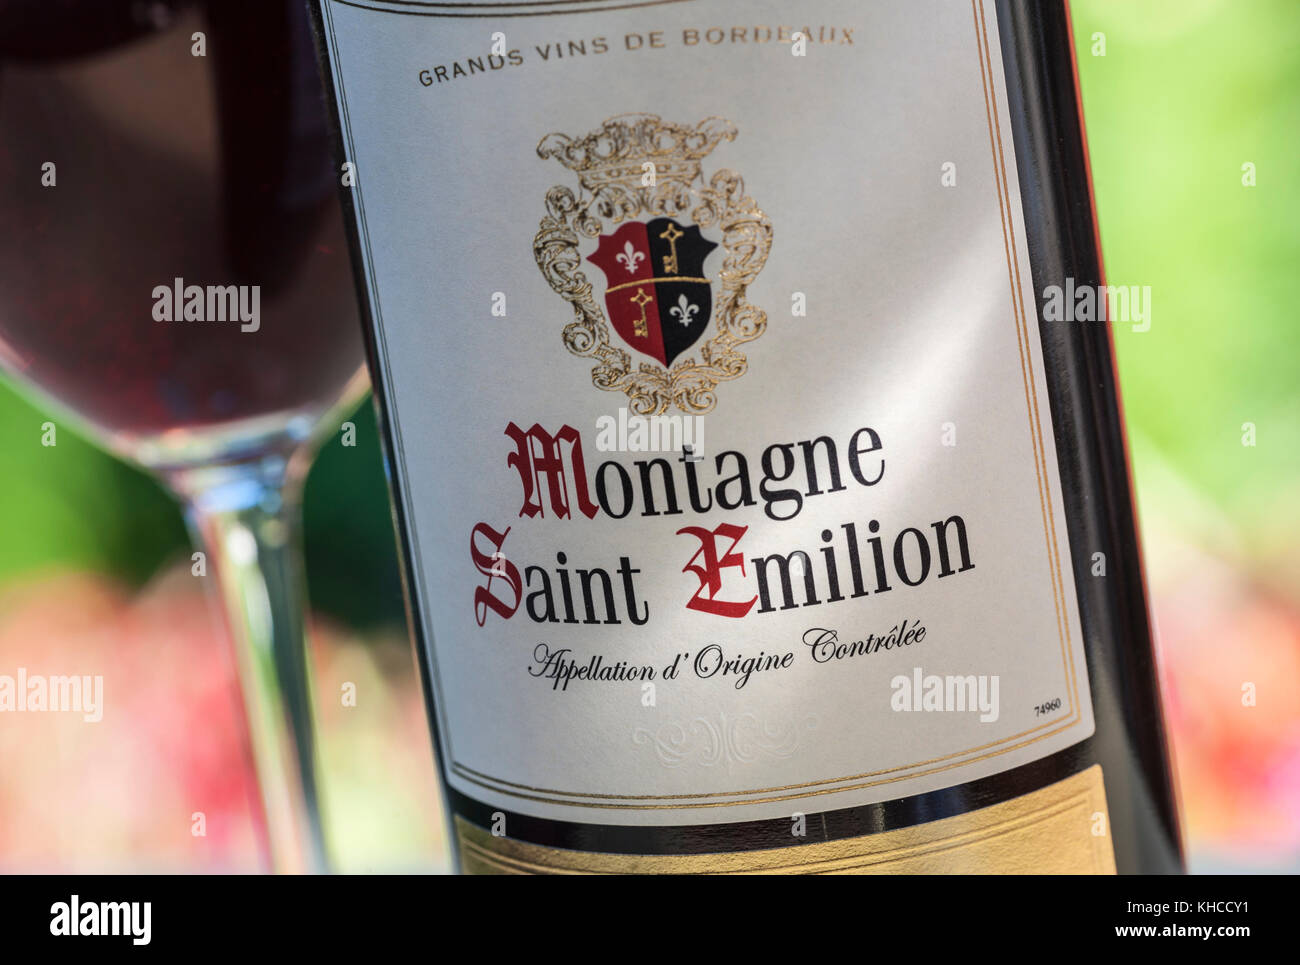 Montagne Saint Emilion vin ensoleillée avec étiquettes pour bouteilles de vin rouge derrière le verre de dégustation de vin floral en situation d'alfresco Banque D'Images